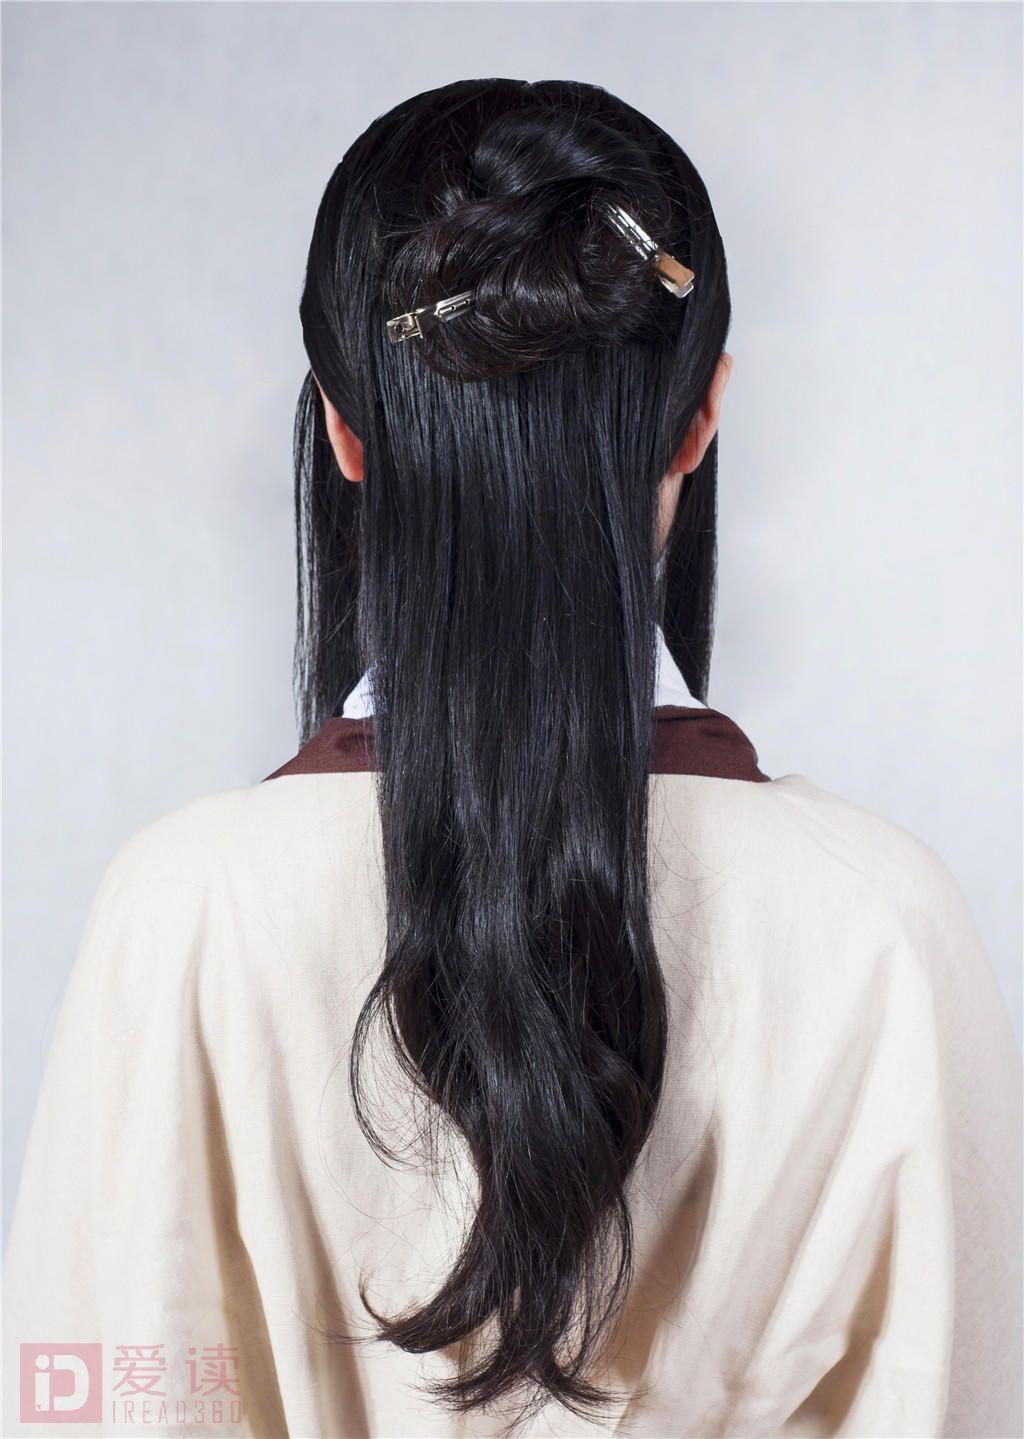 古装影视发型之西汉王侯夫人造型